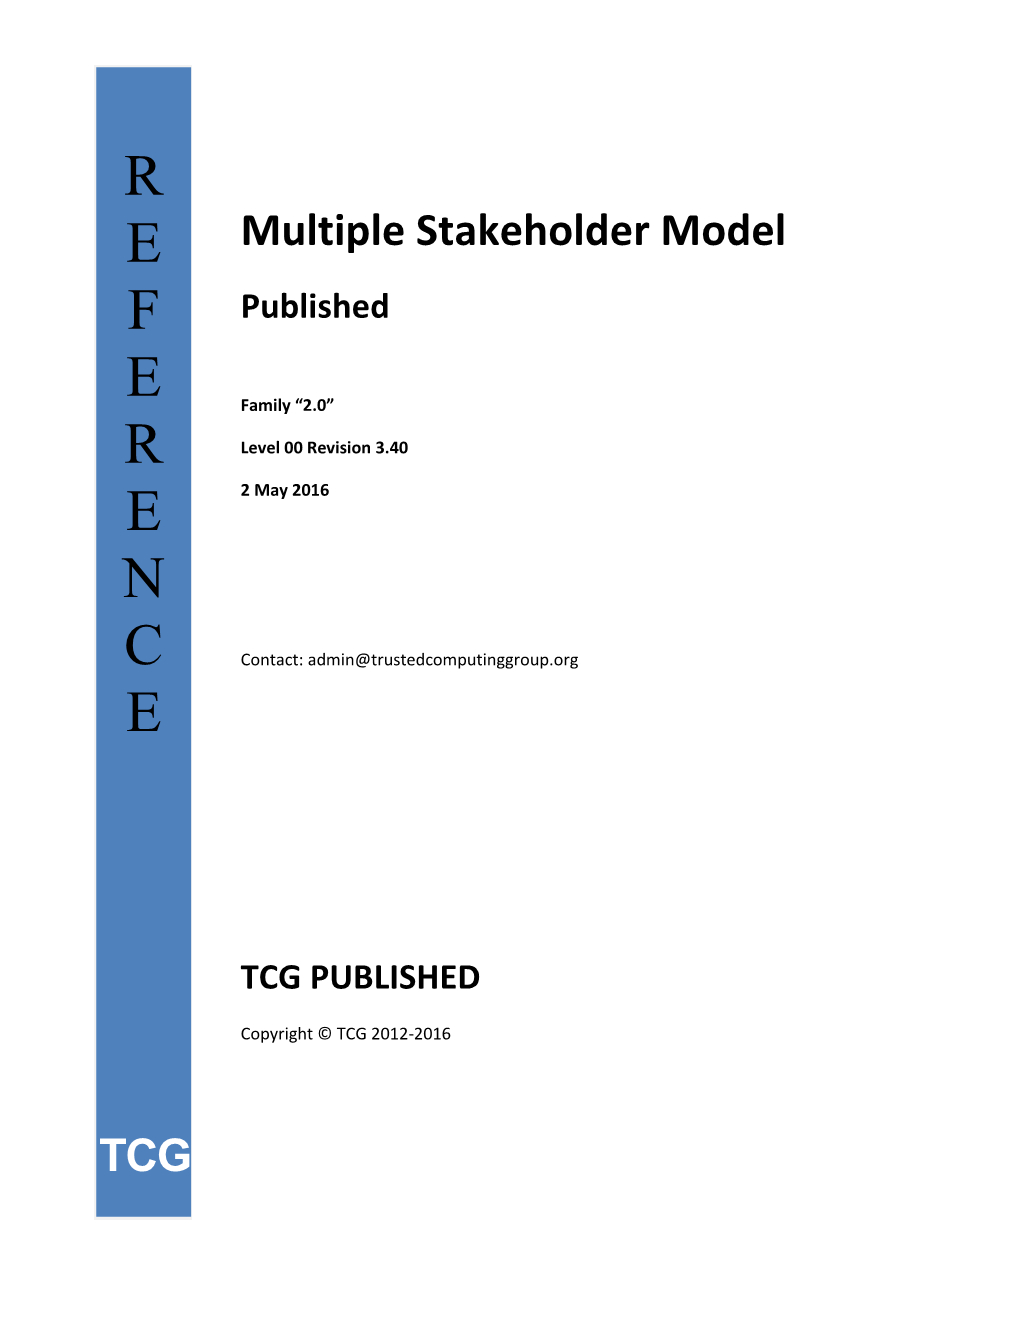 Multiple Stakeholder Model Revision 3.40